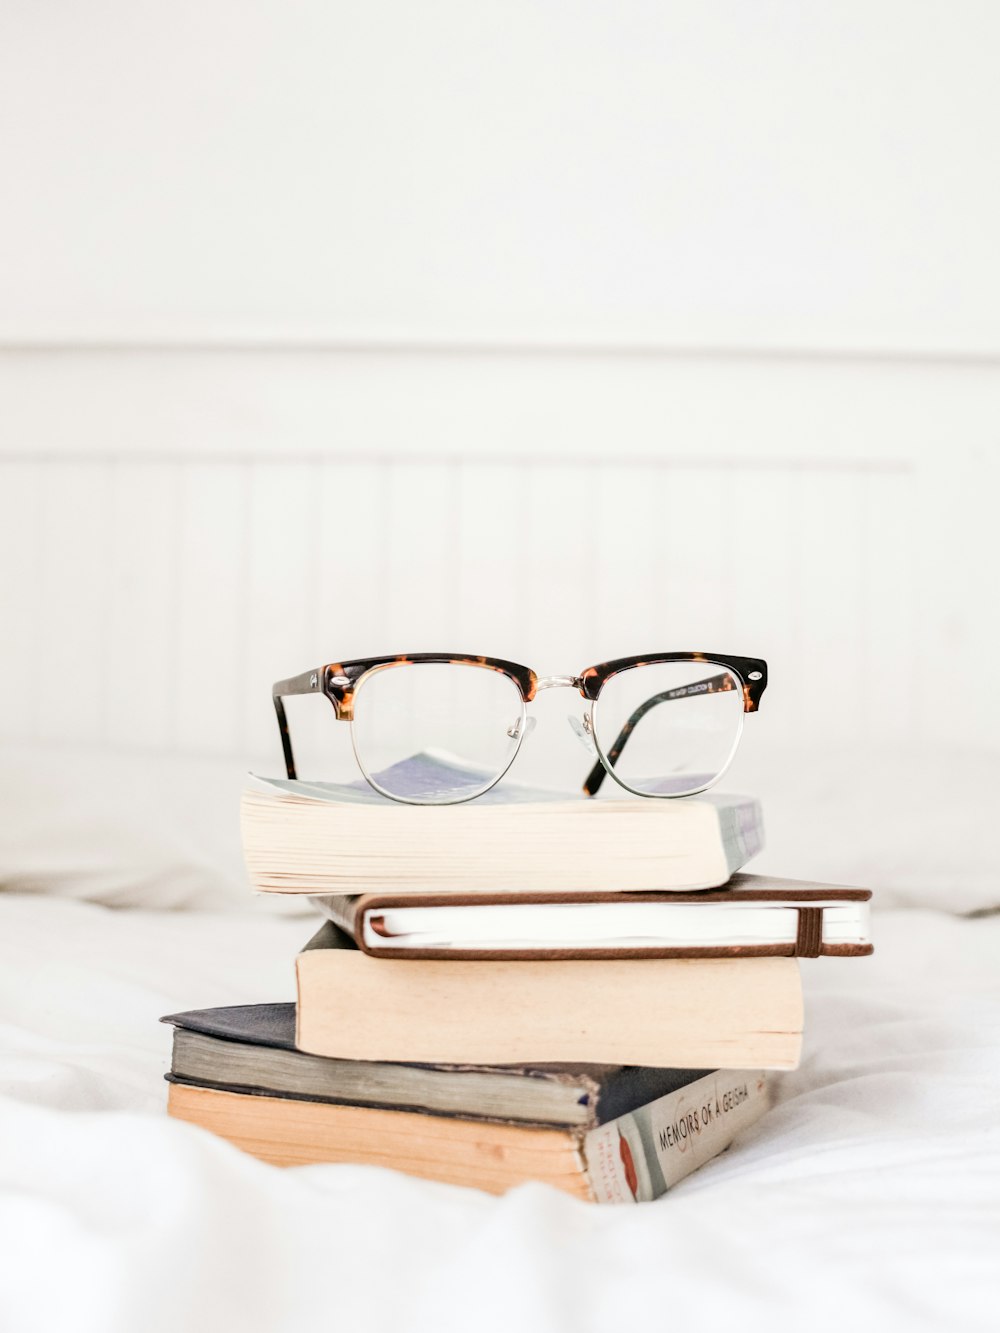 Brille auf Stapelbüchern